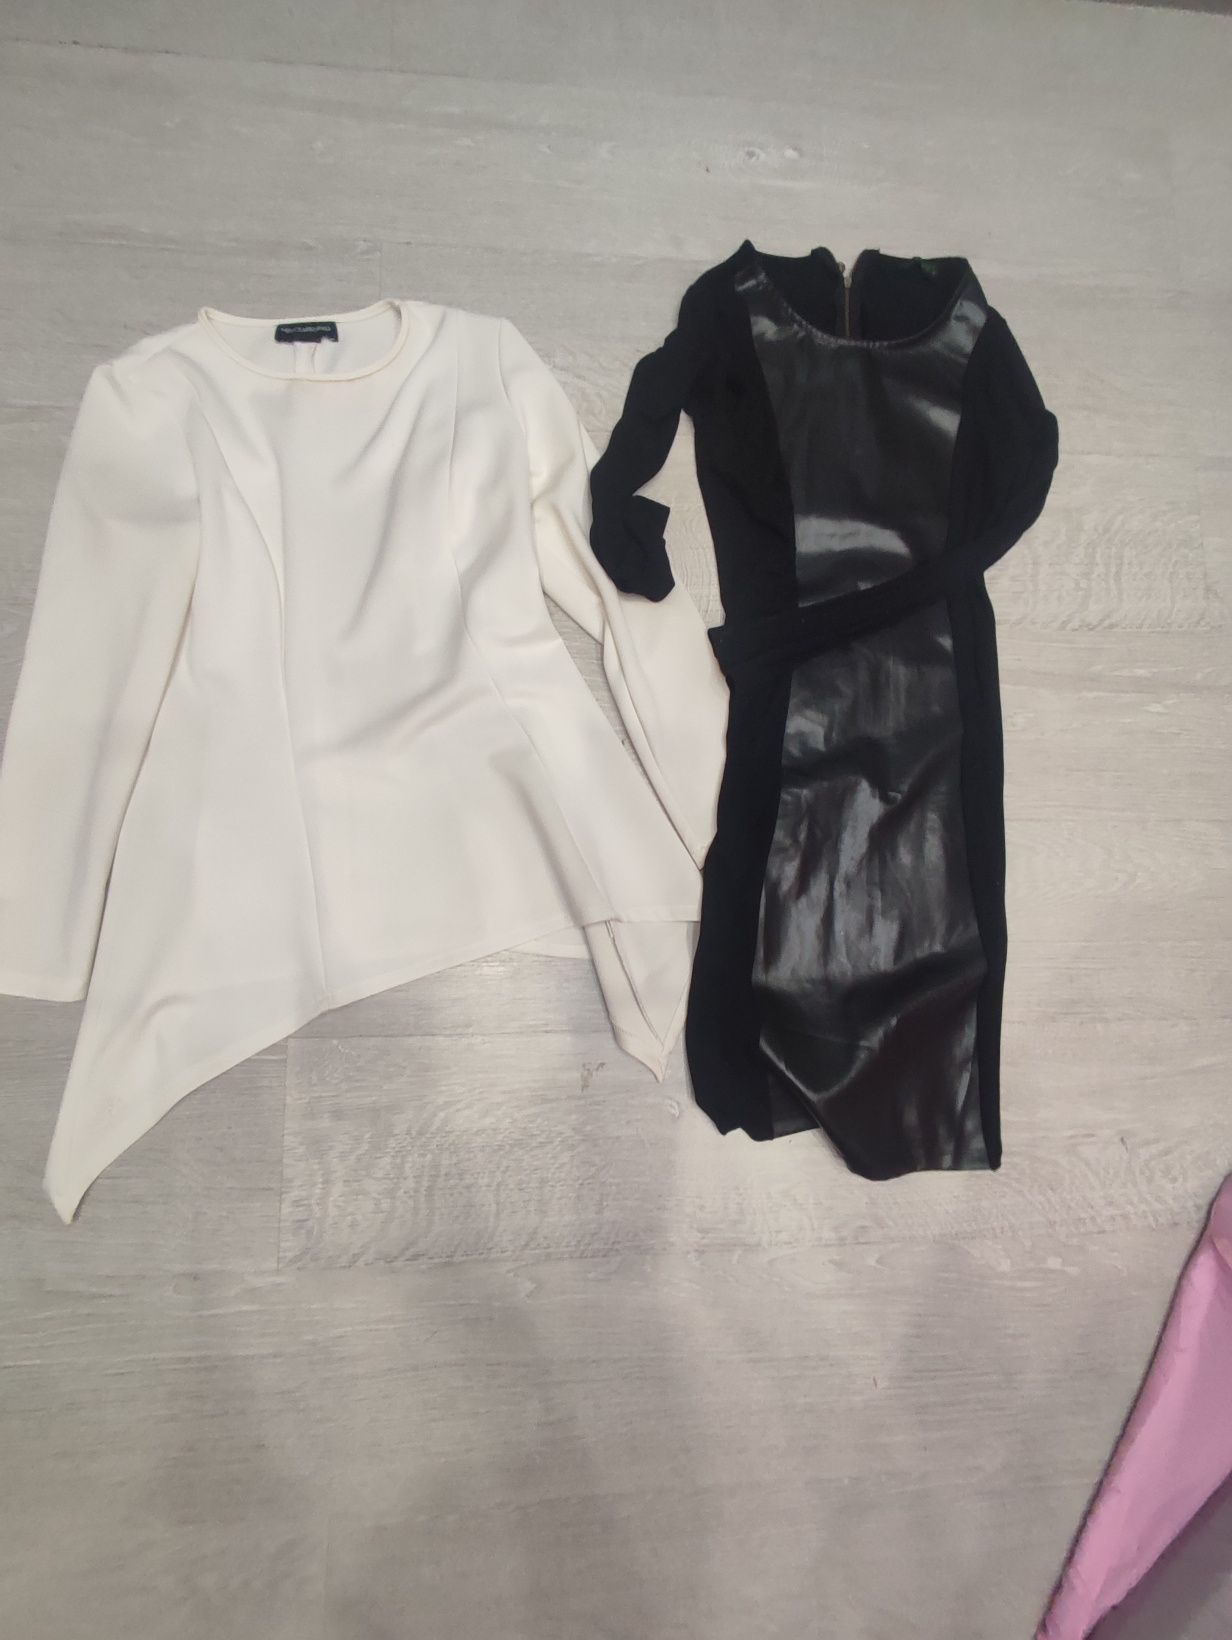 sukienka czarna midi, biała bluzka długa rozmiar 38